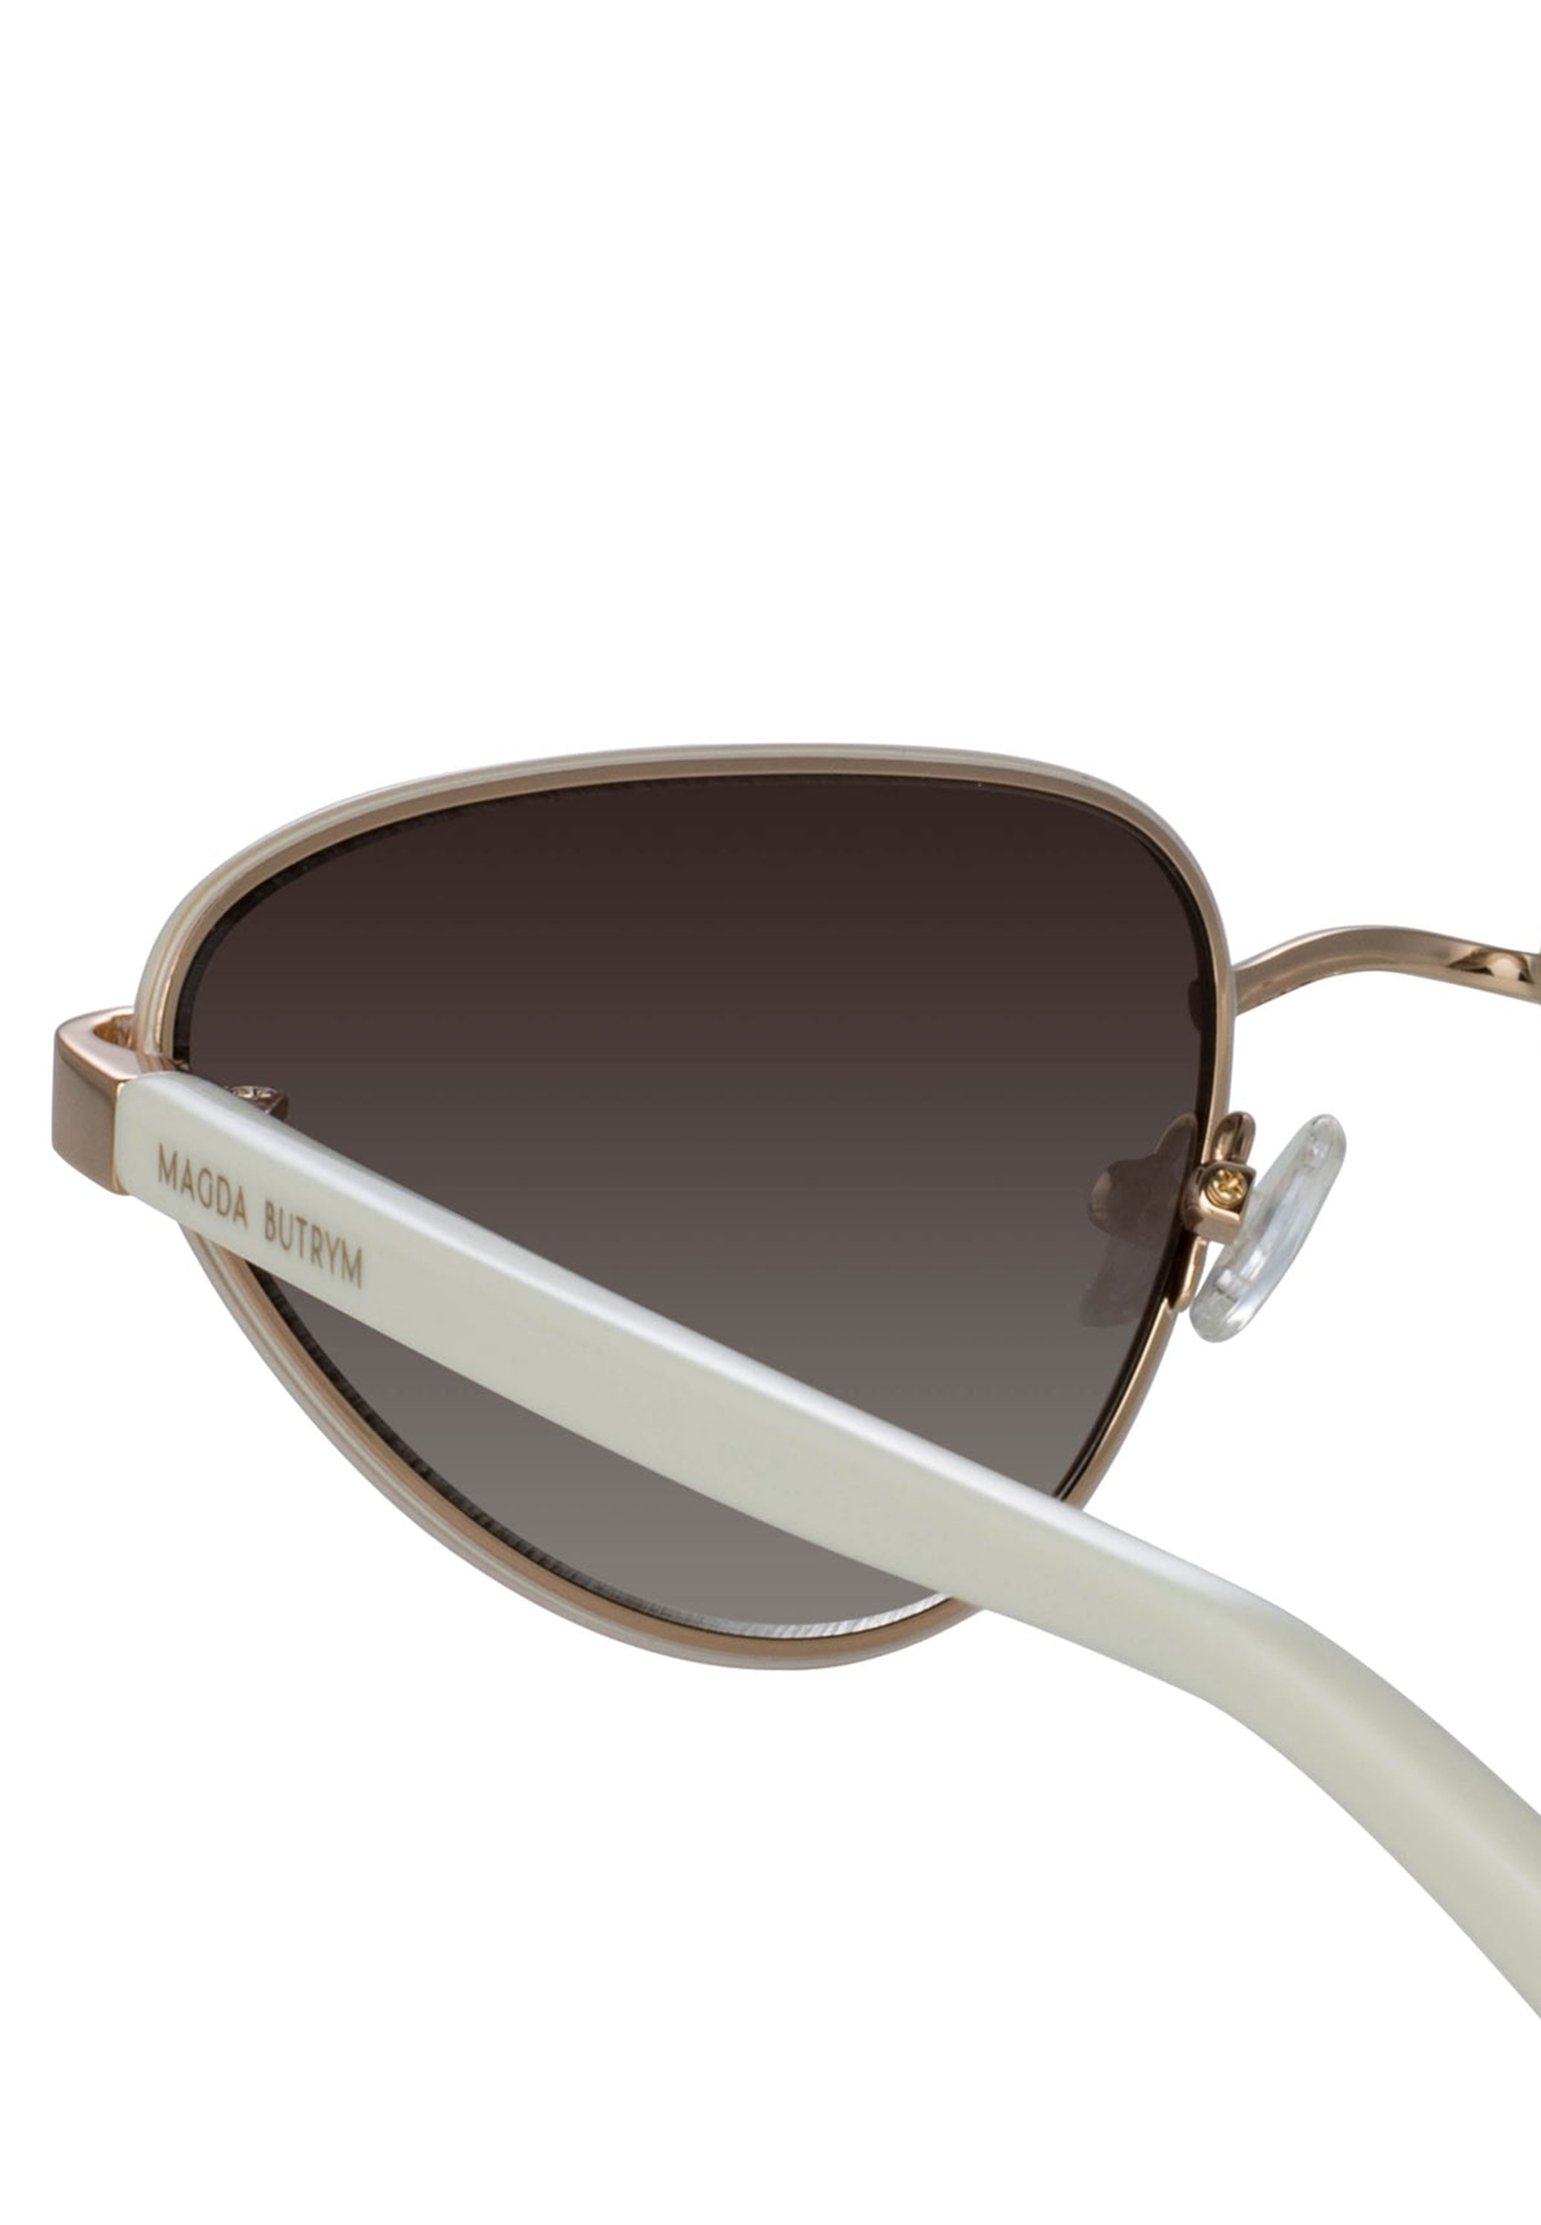 Sunglasses LINDA FARROW Color: white (Code: 2194) in online store Allure